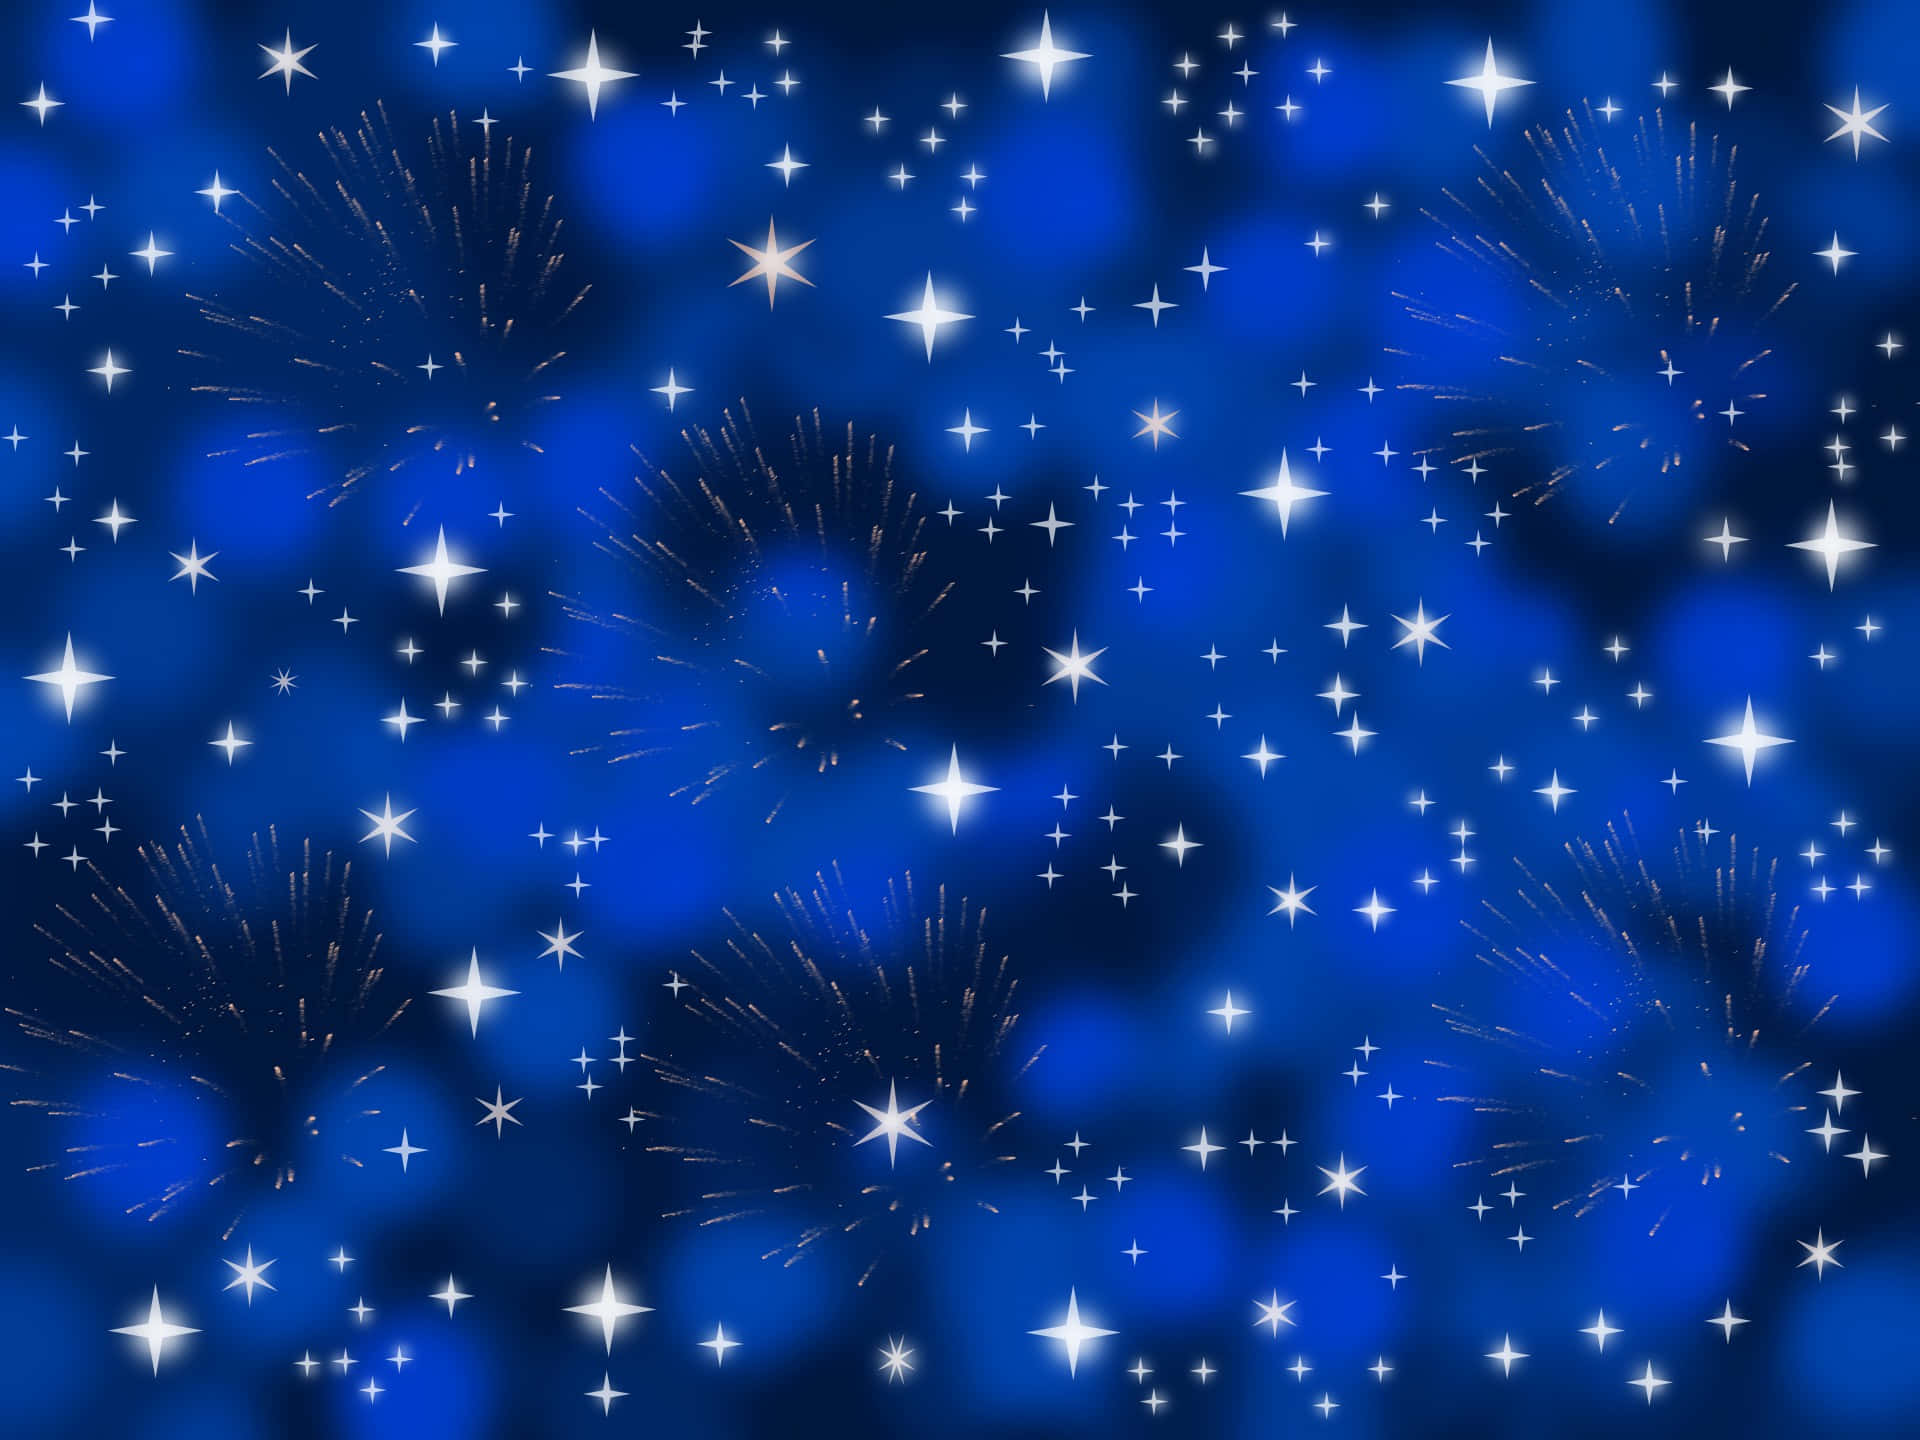 Fundocom Estrelas Azuis De 1920 X 1440